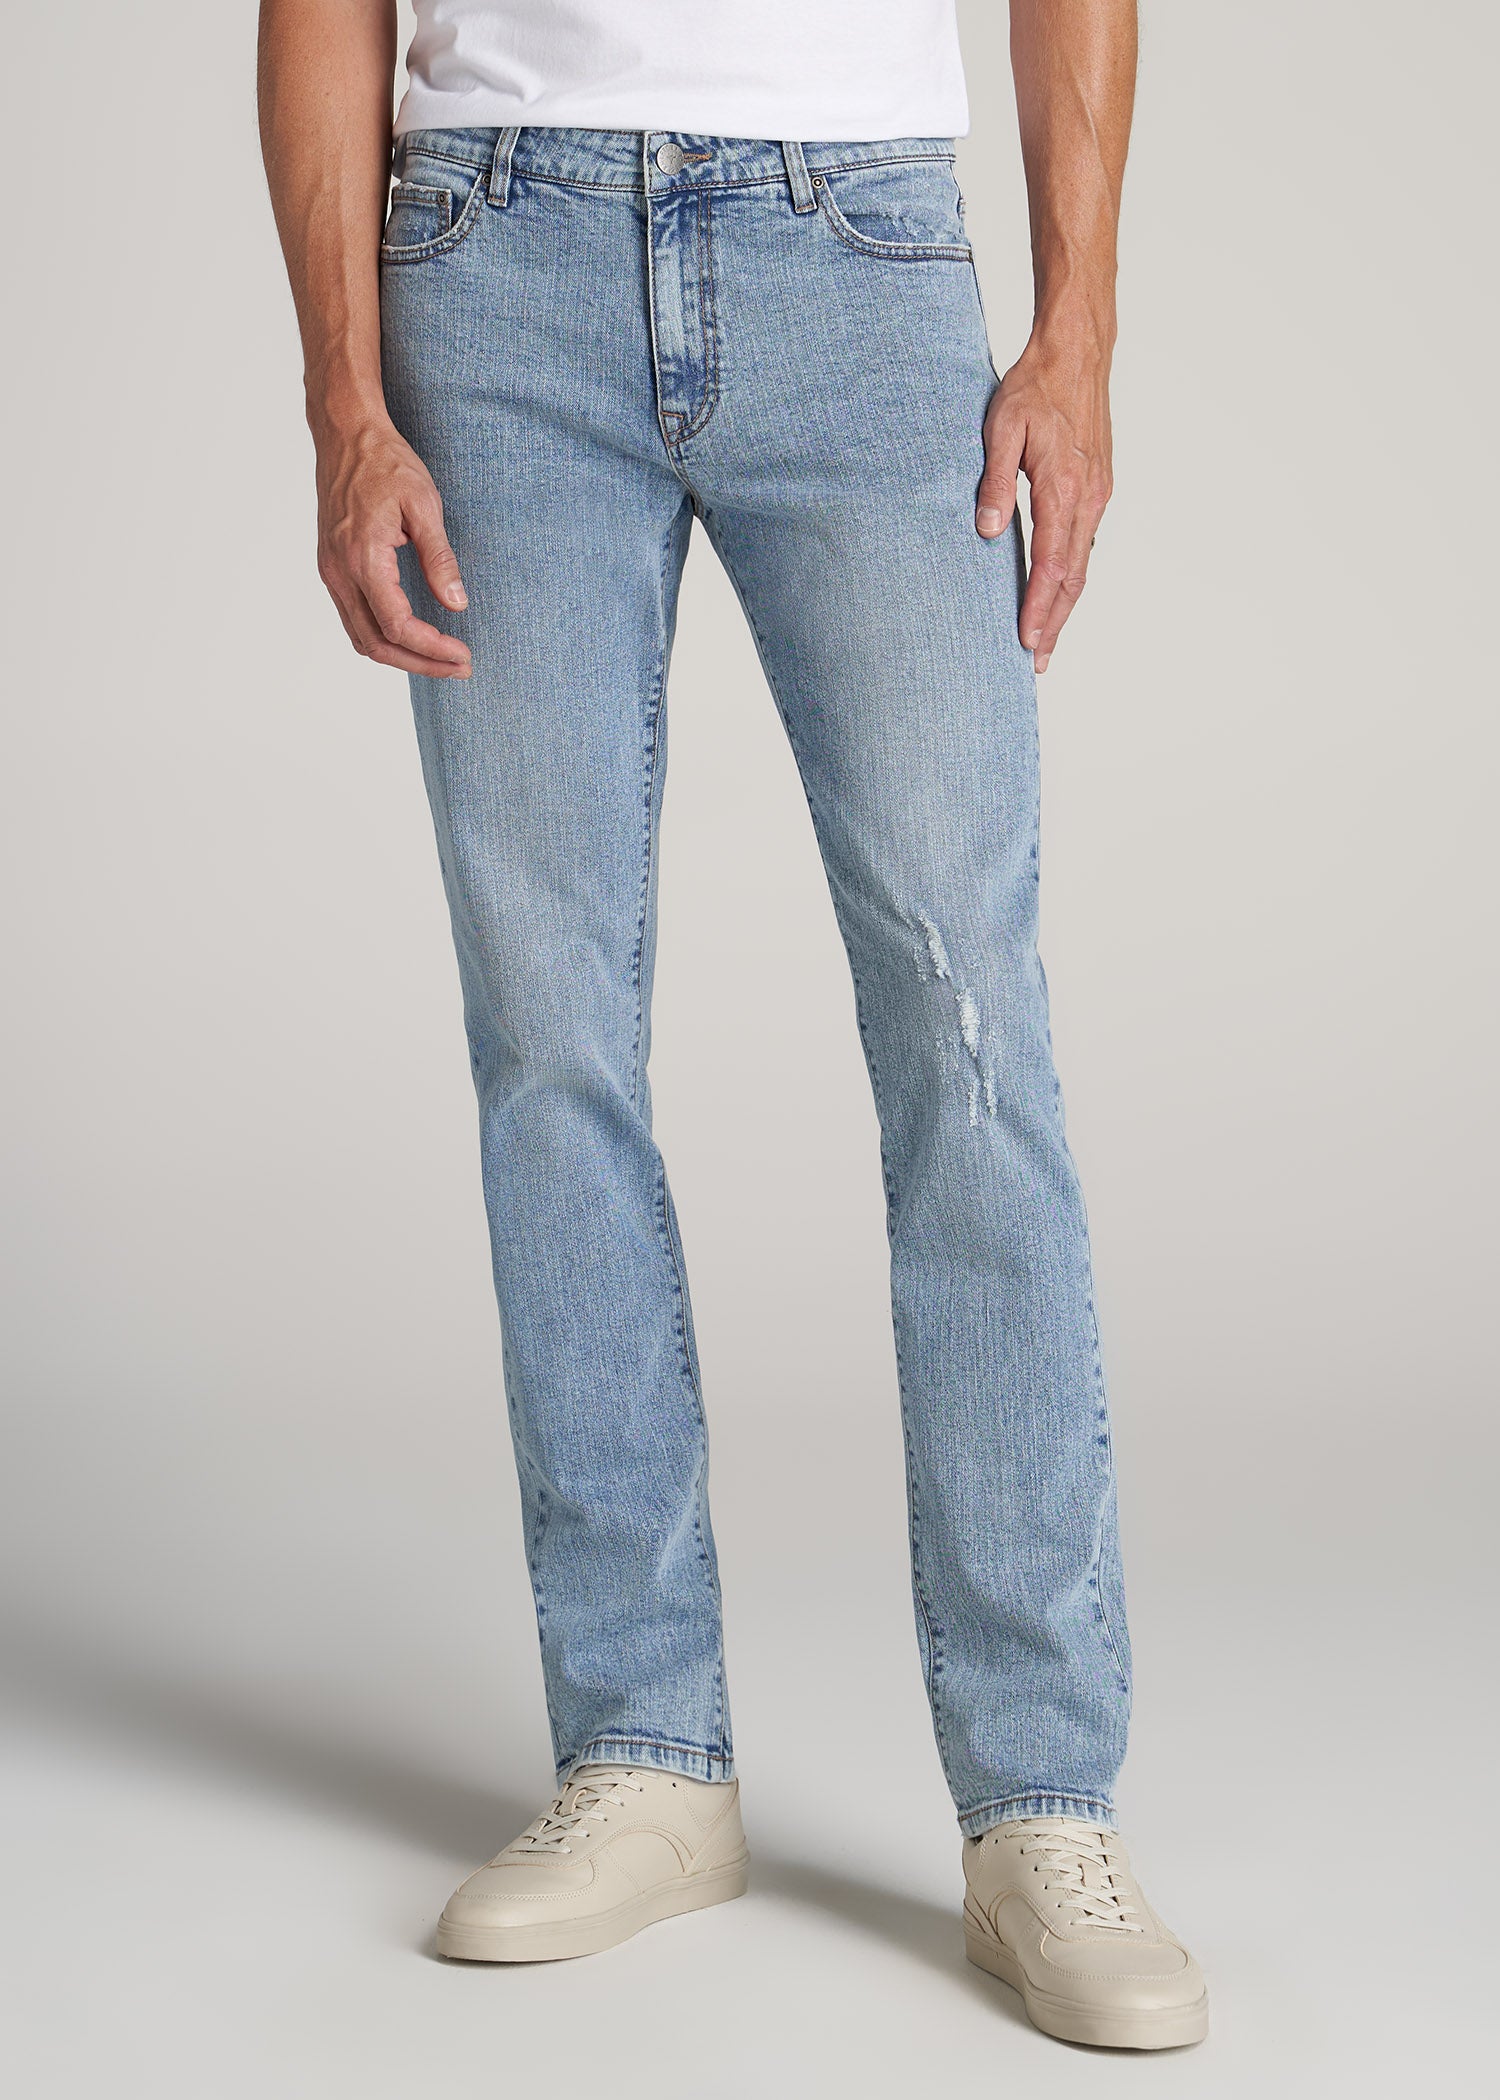 Men's Jeans - Jeans for Men